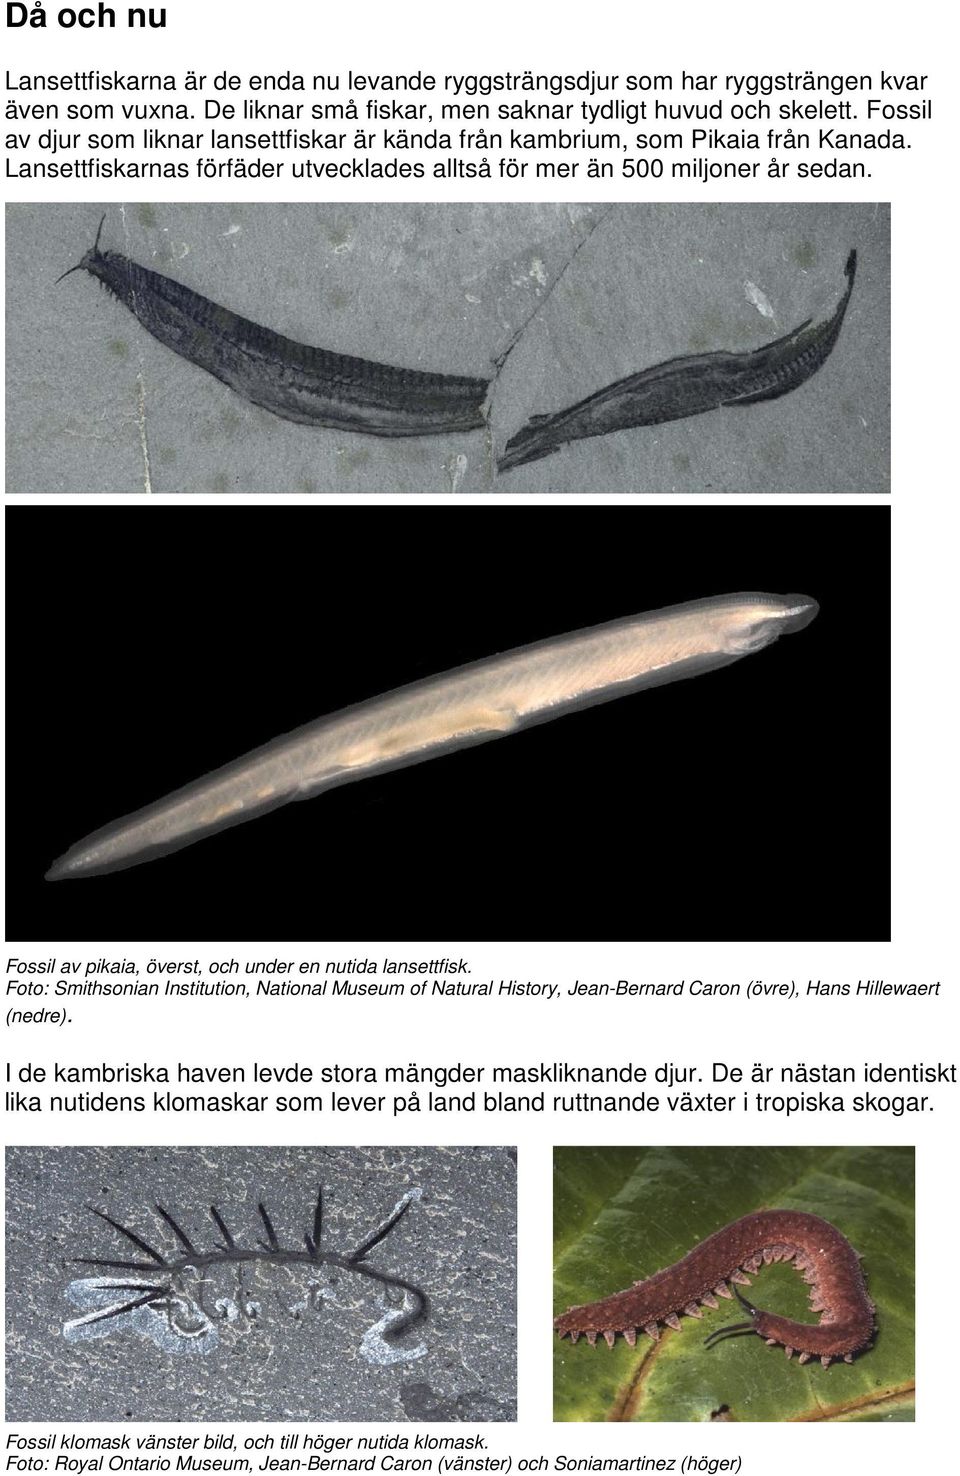 Fossil av pikaia, överst, och under en nutida lansettfisk. Foto: Smithsonian Institution, National Museum of Natural History, Jean-Bernard Caron (övre), Hans Hillewaert (nedre).